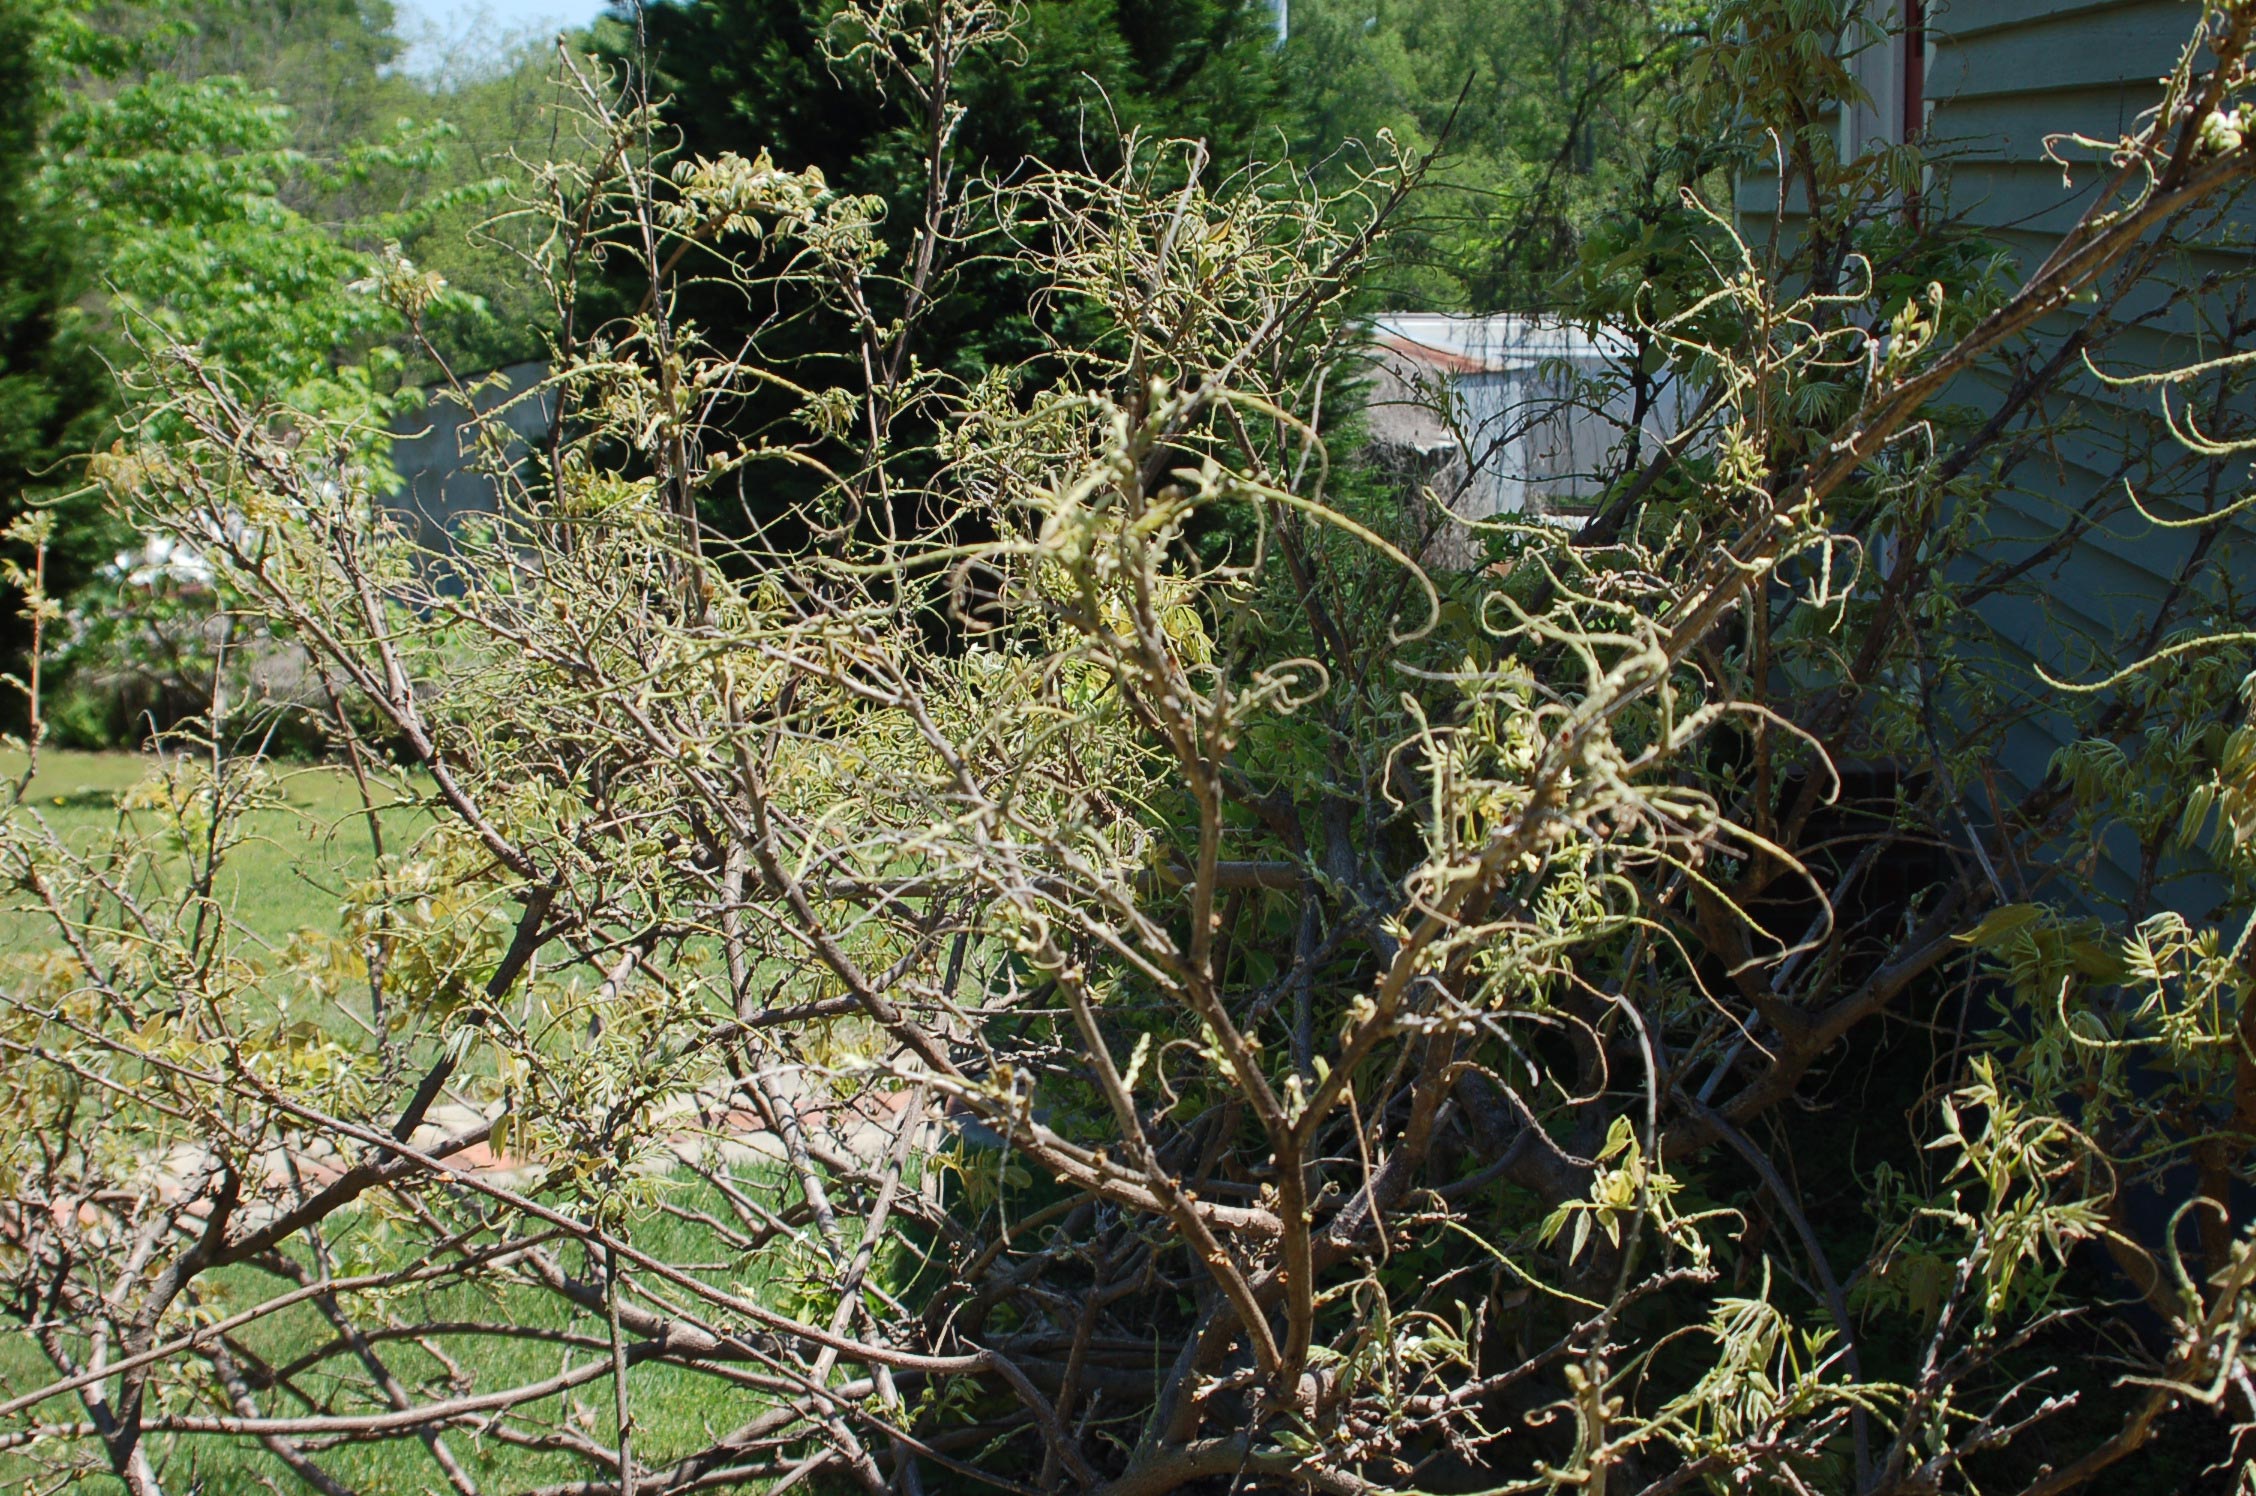 kudzu bug on wisteria